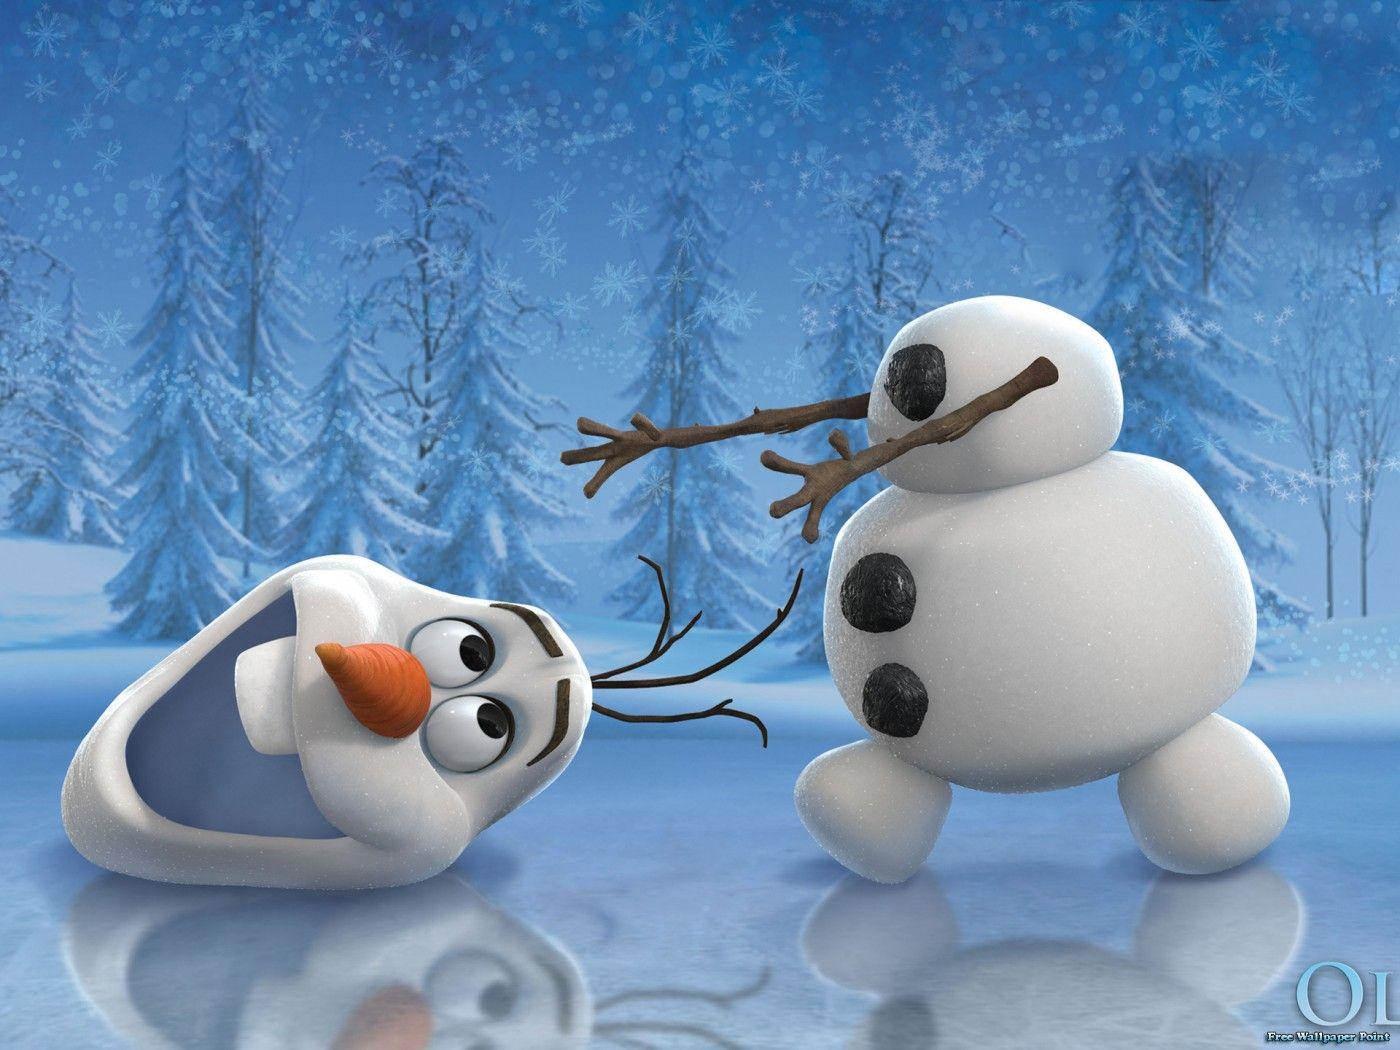 Disney Frozen Olaf HD Wallpaper for Mac